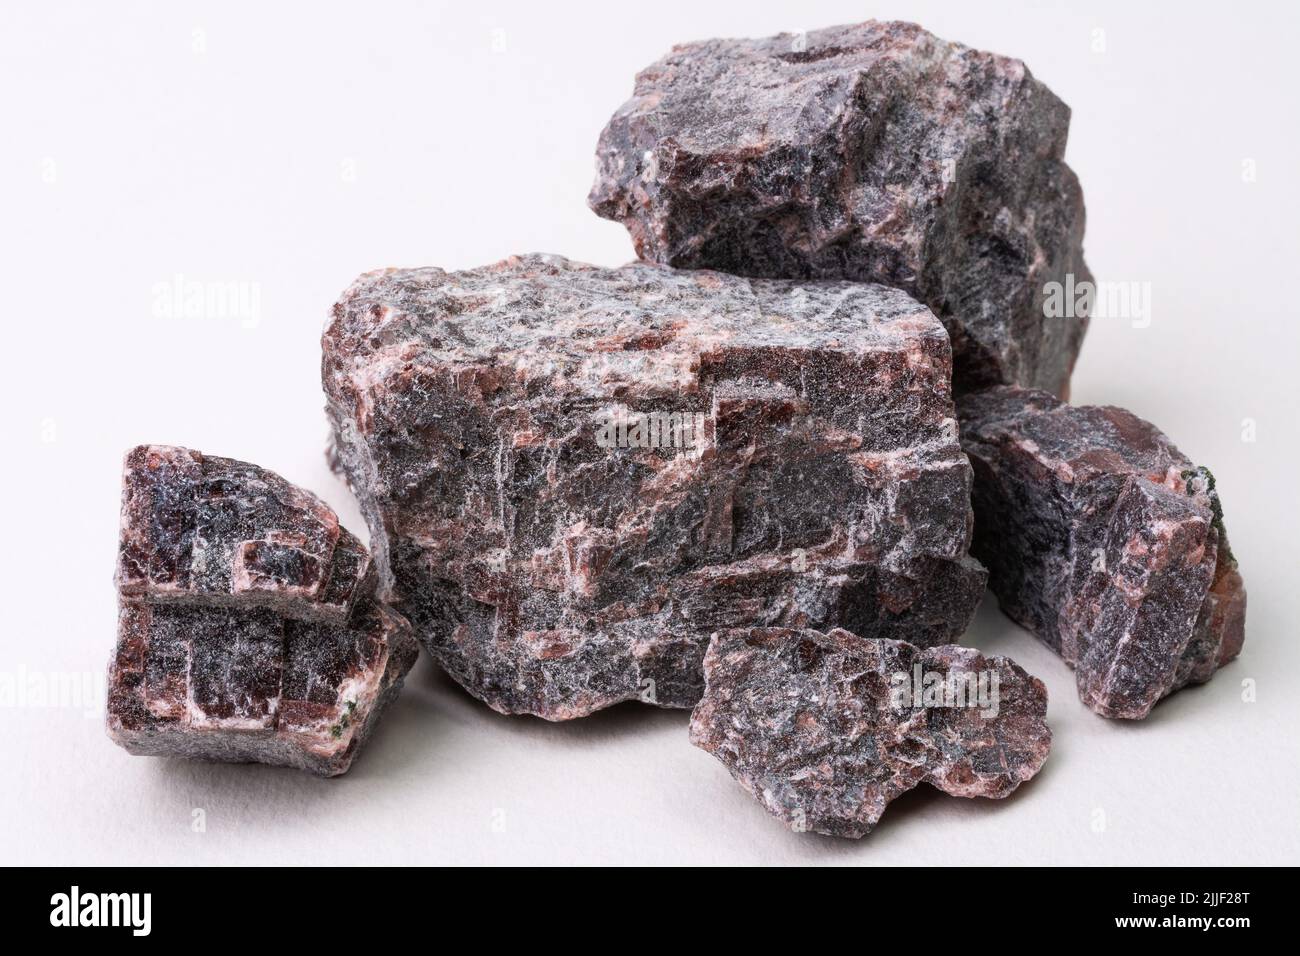 Himalaya-Schwarzsalz oder Kala-Namak-Steine, die in einem Ofen gebrannt wurden Stockfoto